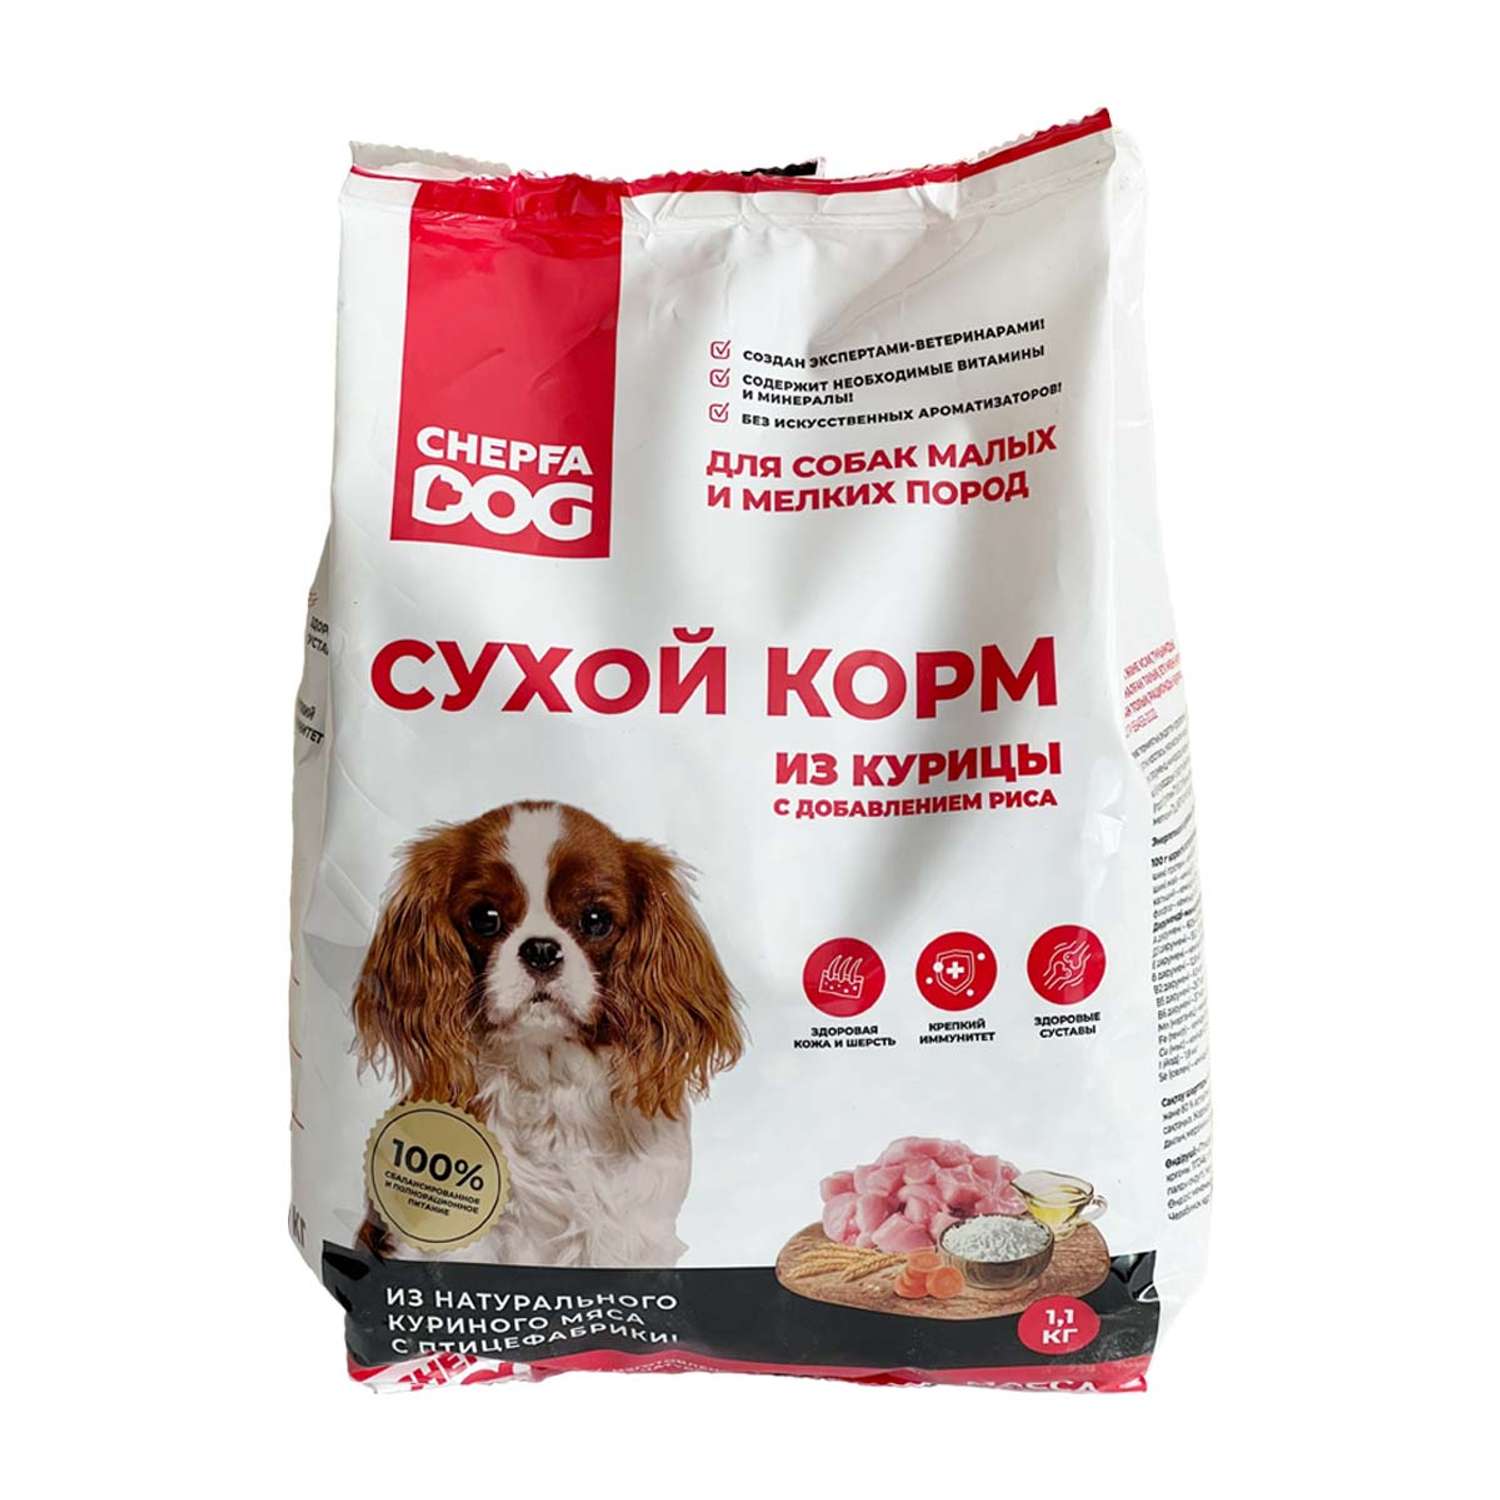 Сухой корм Chepfa Dog полнорационный из курицы 1.1 кг для взрослых собак малых и мелких пород - фото 1